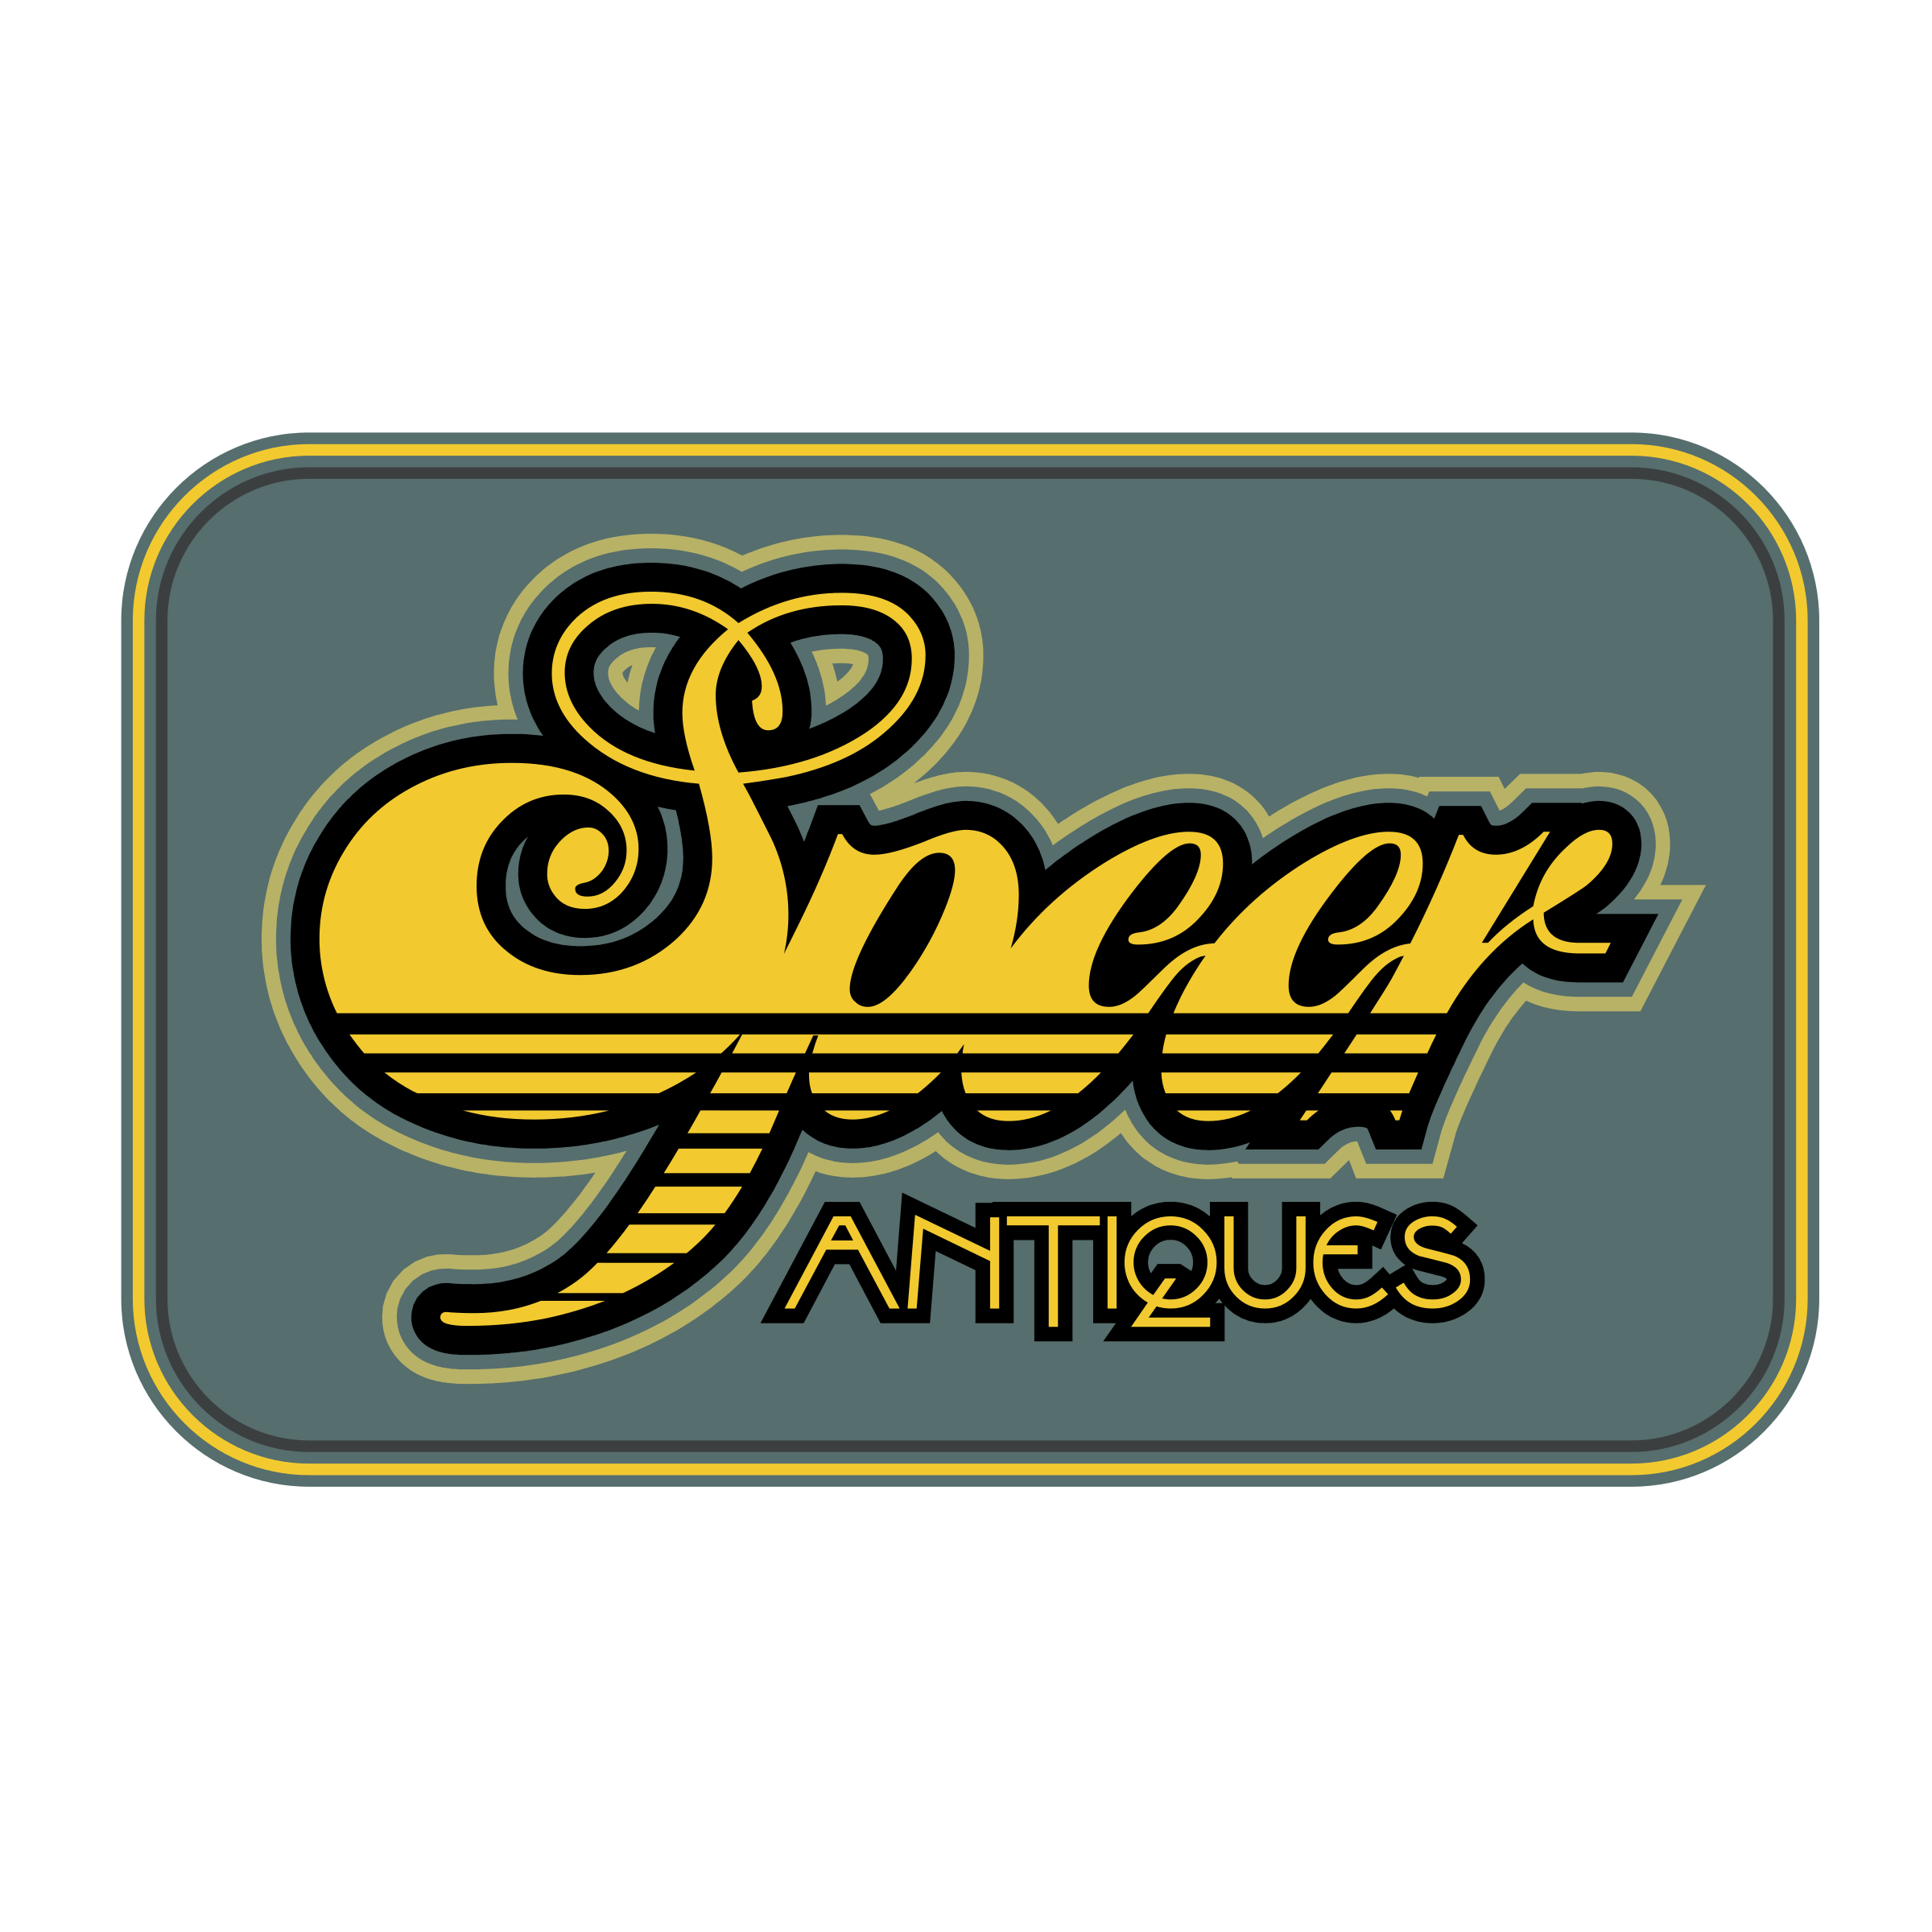 Speer Logo - Speer Antiques Logo PNG Transparent & SVG Vector